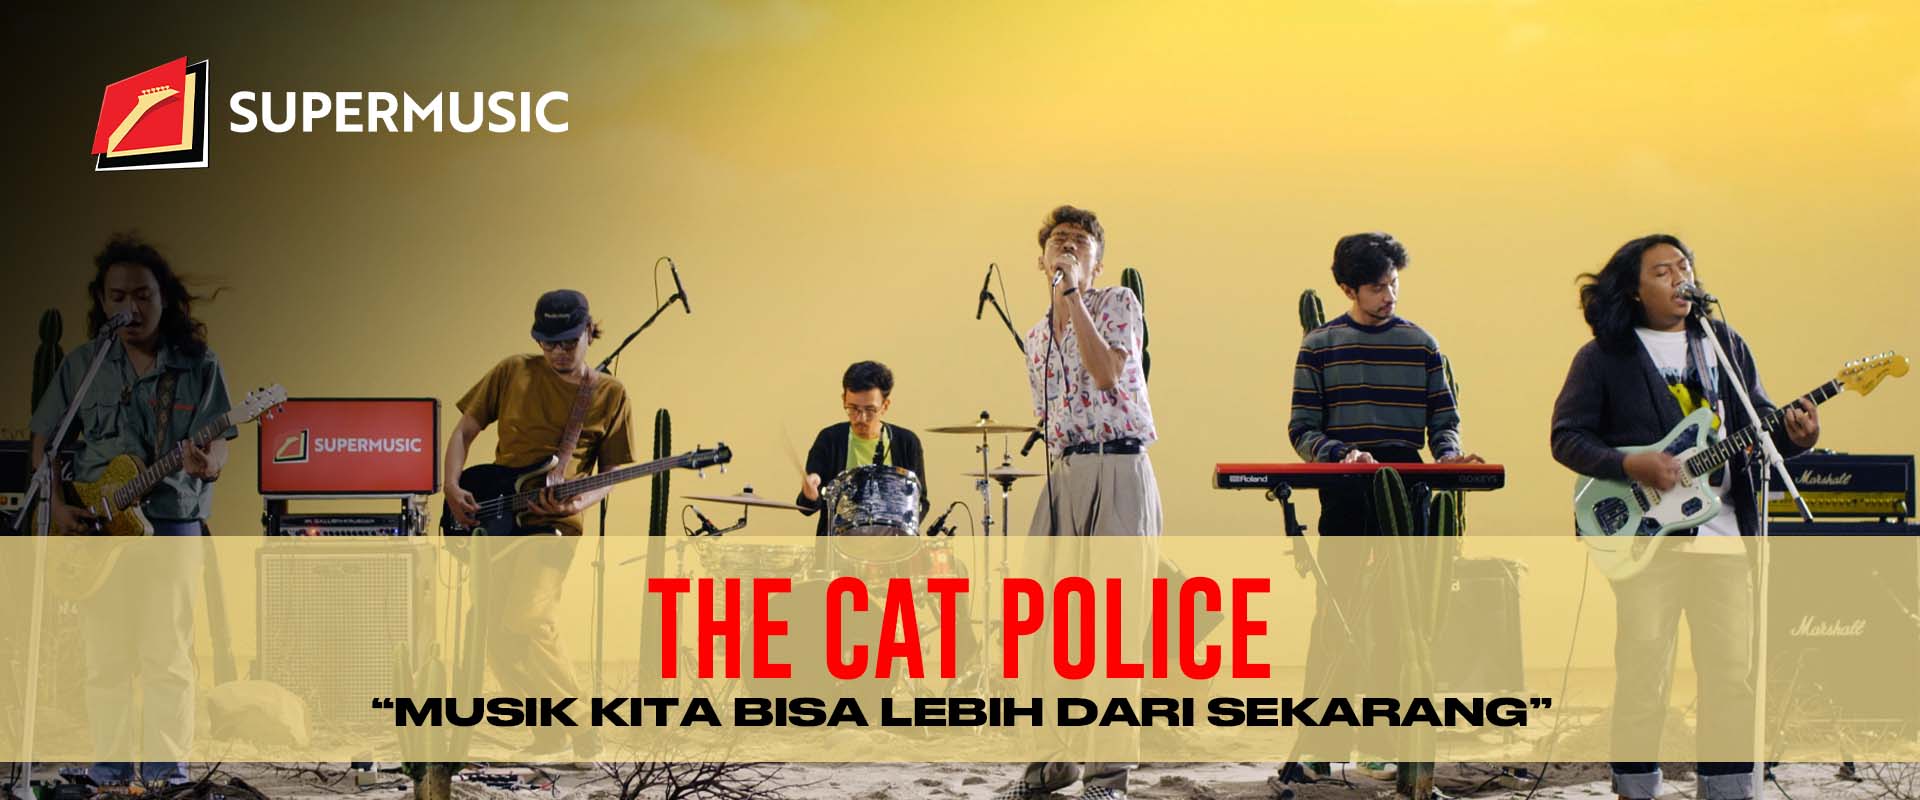 SUPERMUSIC – The Cat Police (Part 2) "Musik Kita Bisa Lebih Dari Sekarang"